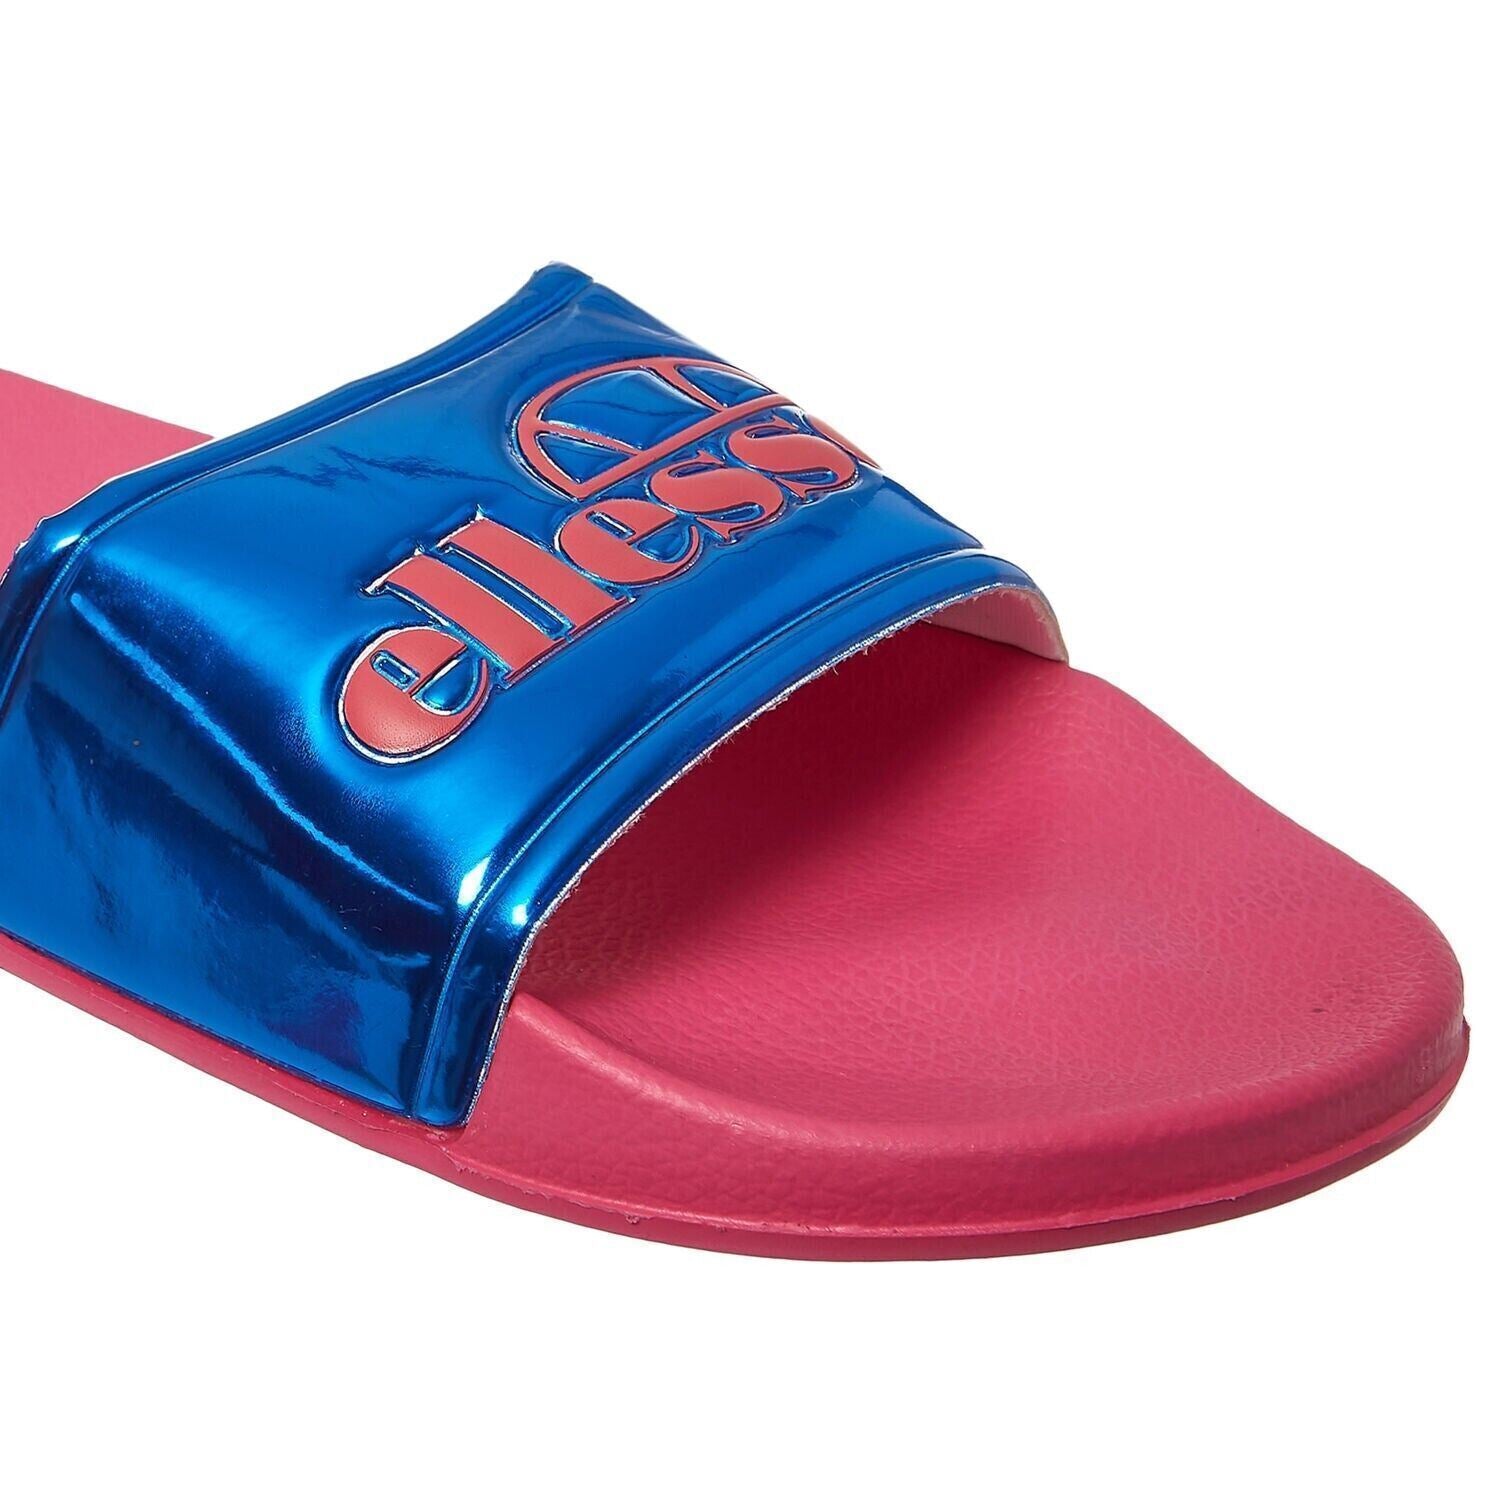 ELLESSE - GISELLE Women's Logo Sliders, Sandals, Pink/Blue, size UK 6 / EU 39